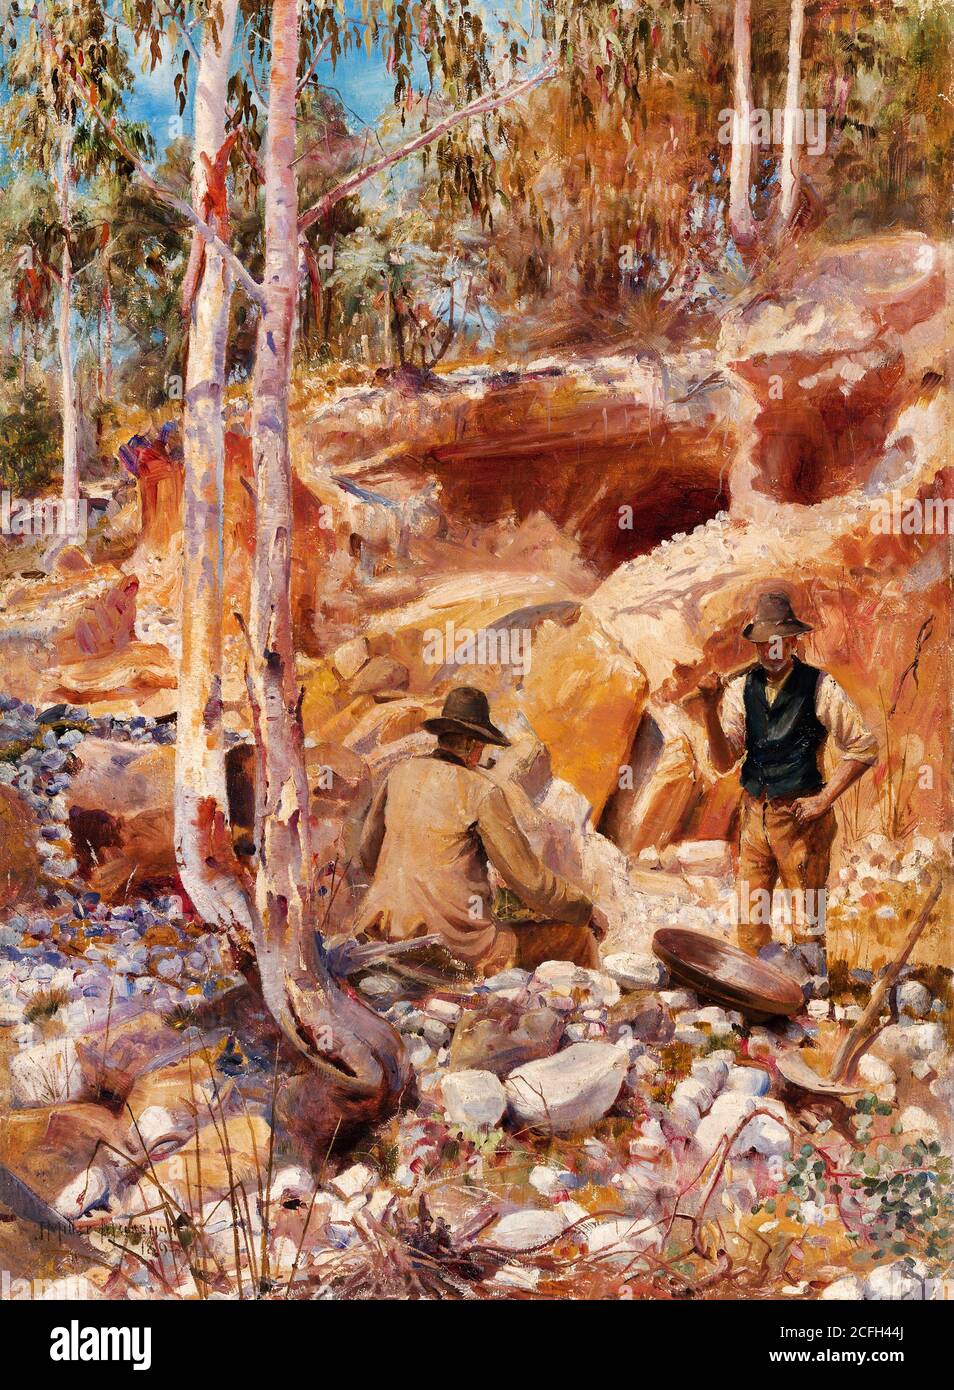 John Brett, Fossicking for Gold, 1893, Oil on canvas, National Gallery of Australia, Canberra, Australia. Stock Photo